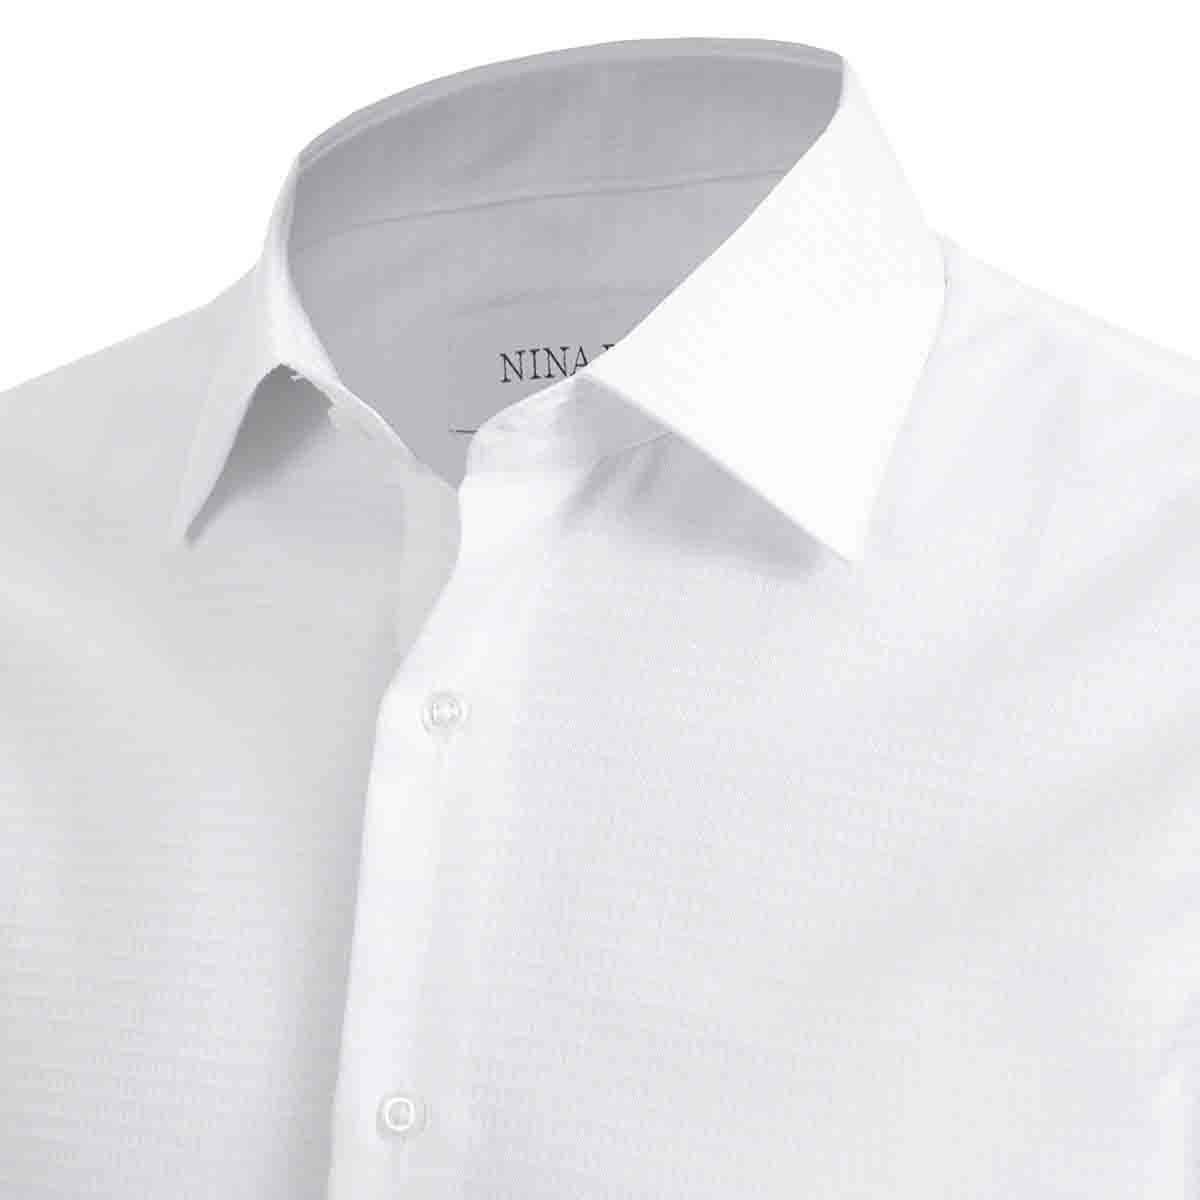 Camisa de Vestir Color Blanco Nina Ricci para Caballero